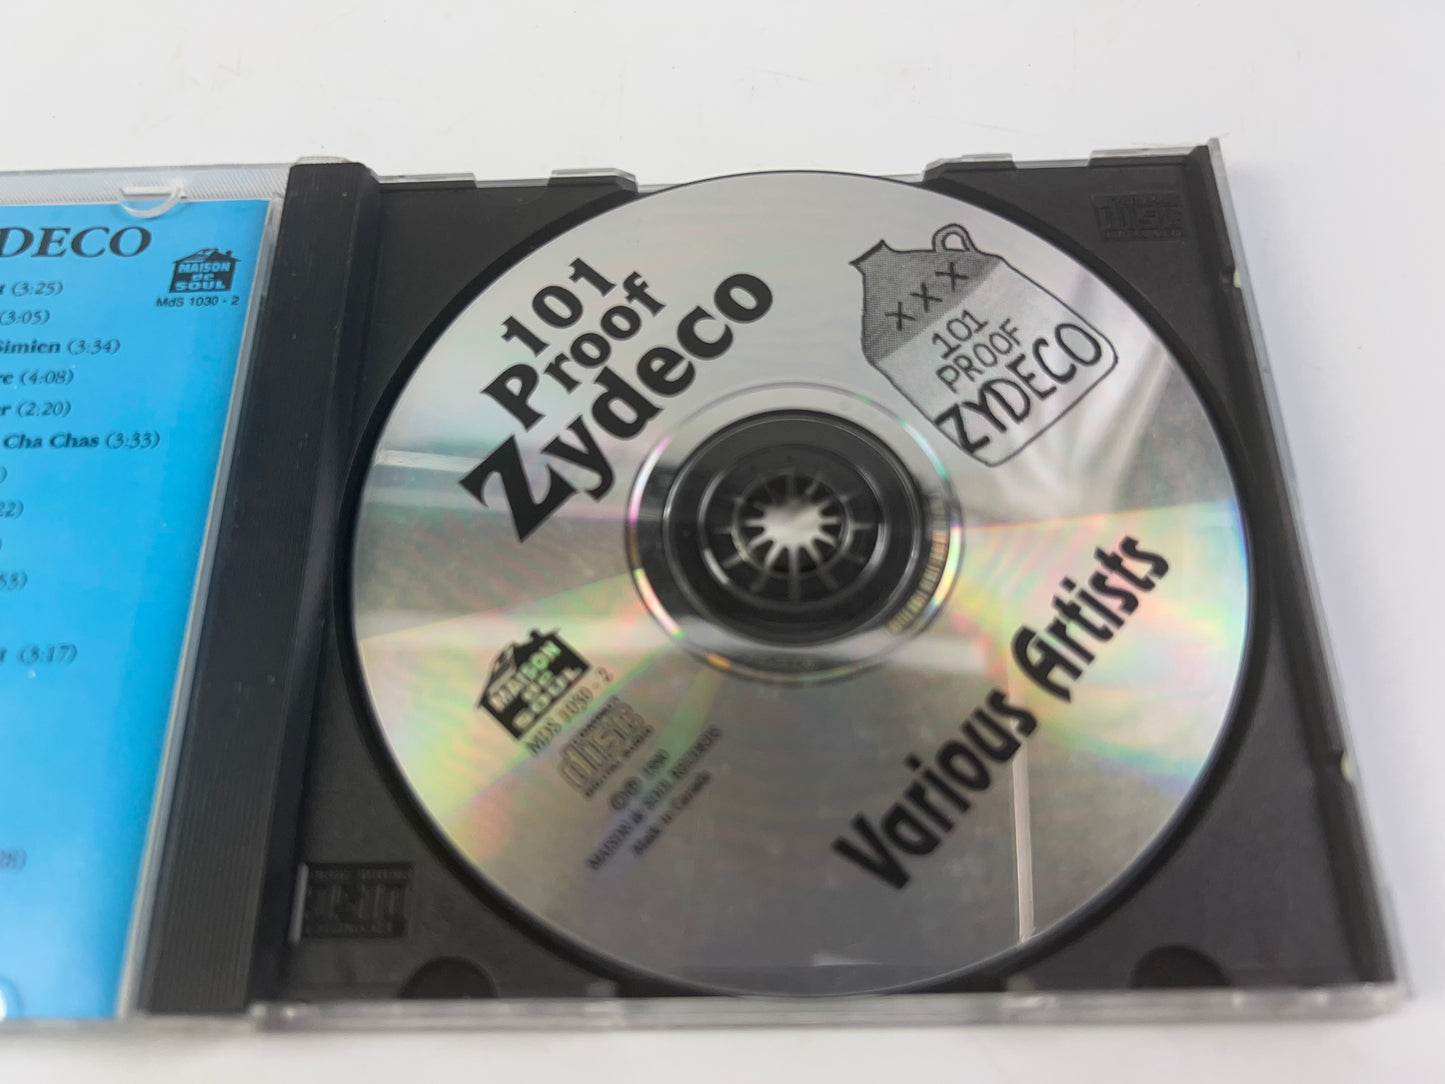 101 Proof Zydeco / Various by 101 Proof Zydeco / Various (CD, 1995)